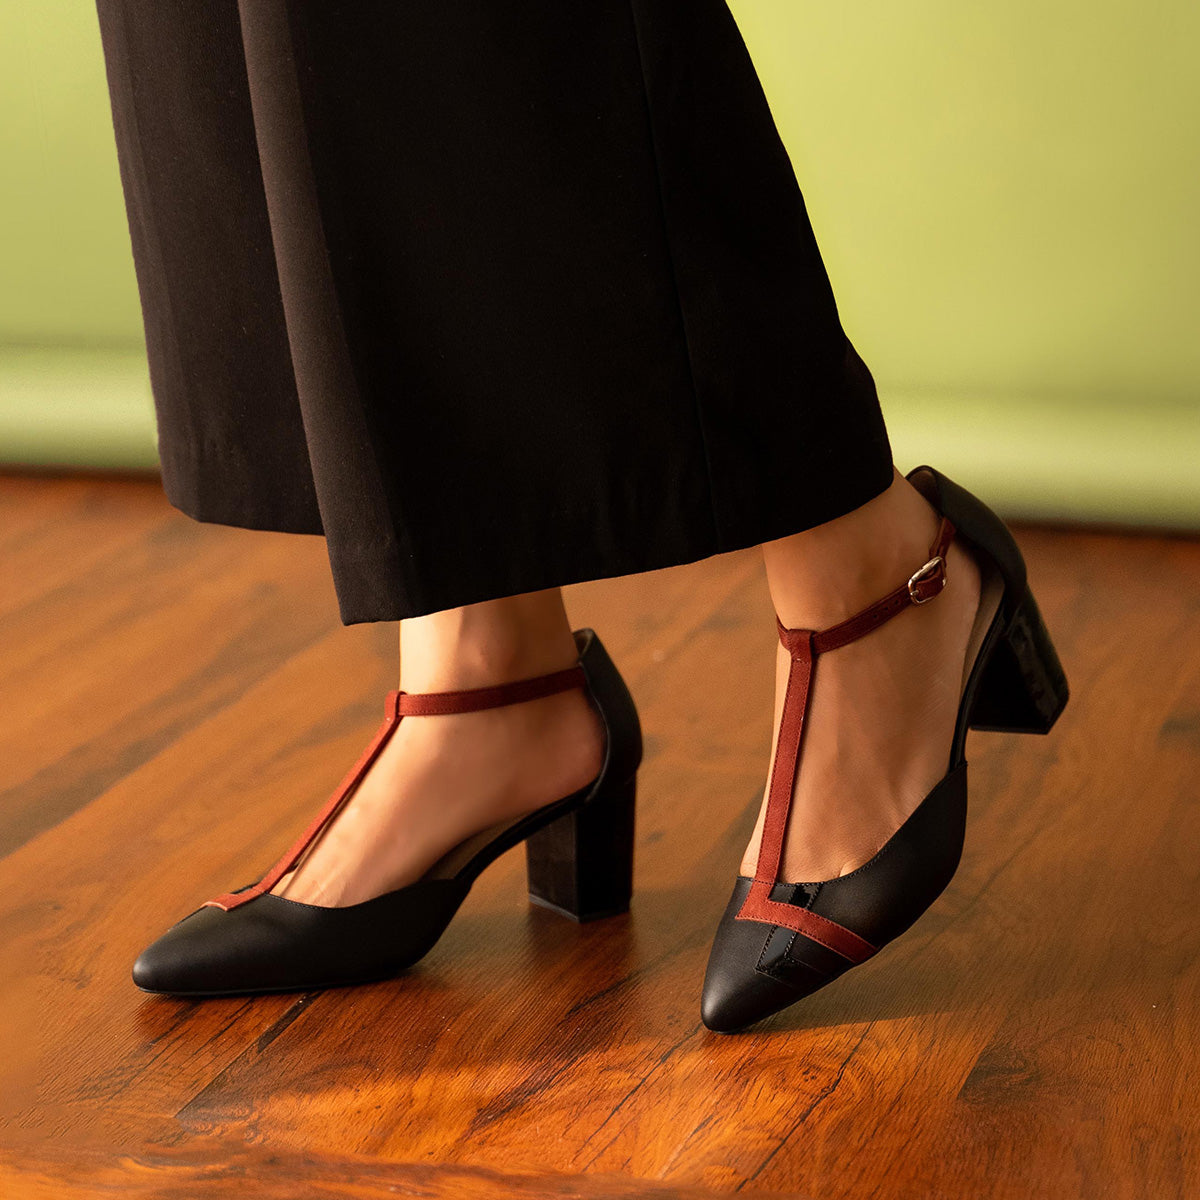 Buy Luxury Brand Shoes || OCEEDEE INDIA || Best Shoe Brands for Women ...